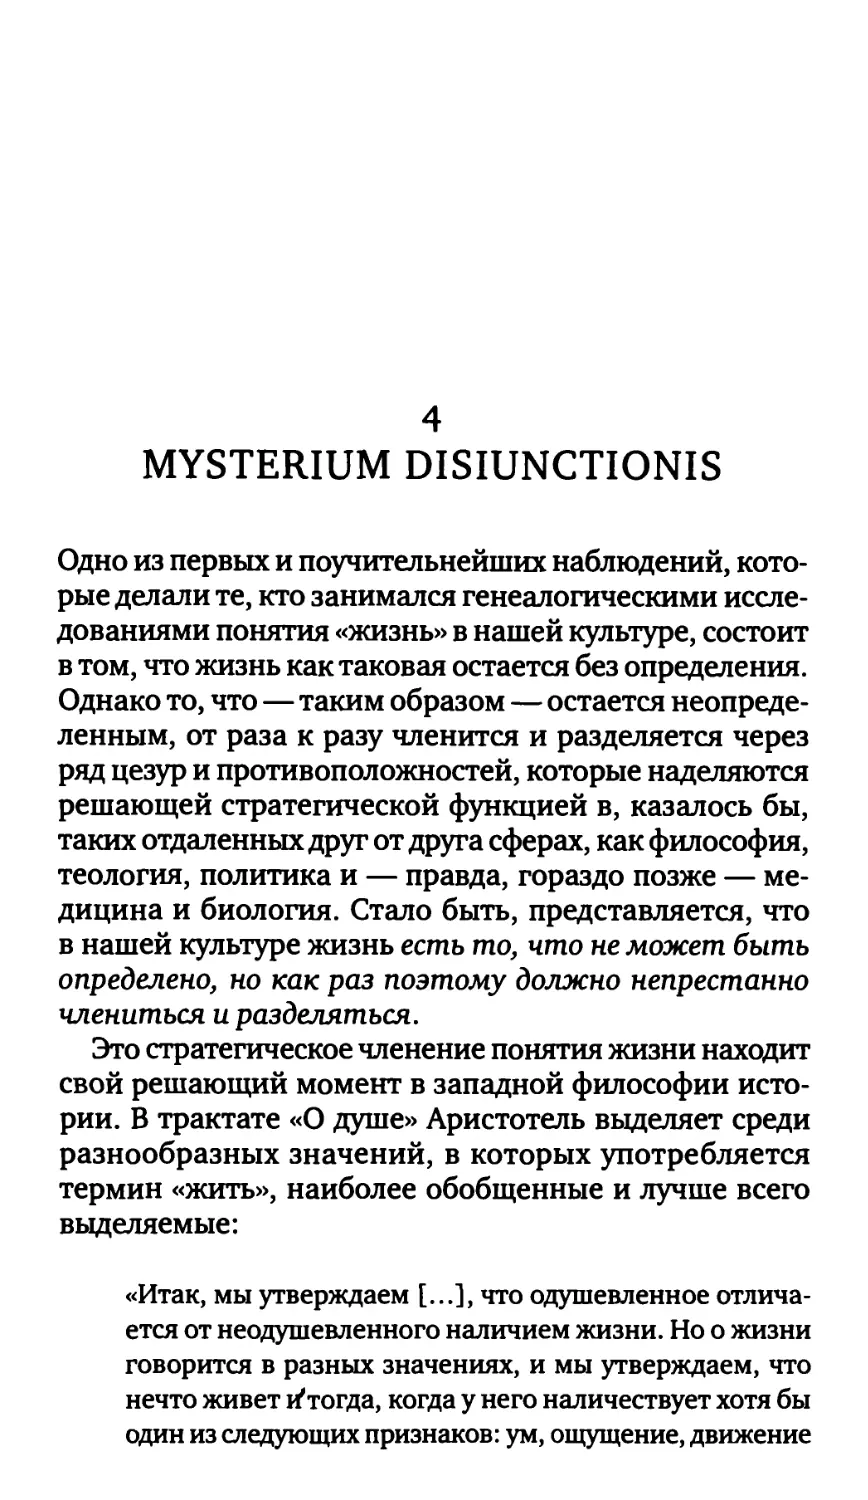 4. Mysterium disiunctionis